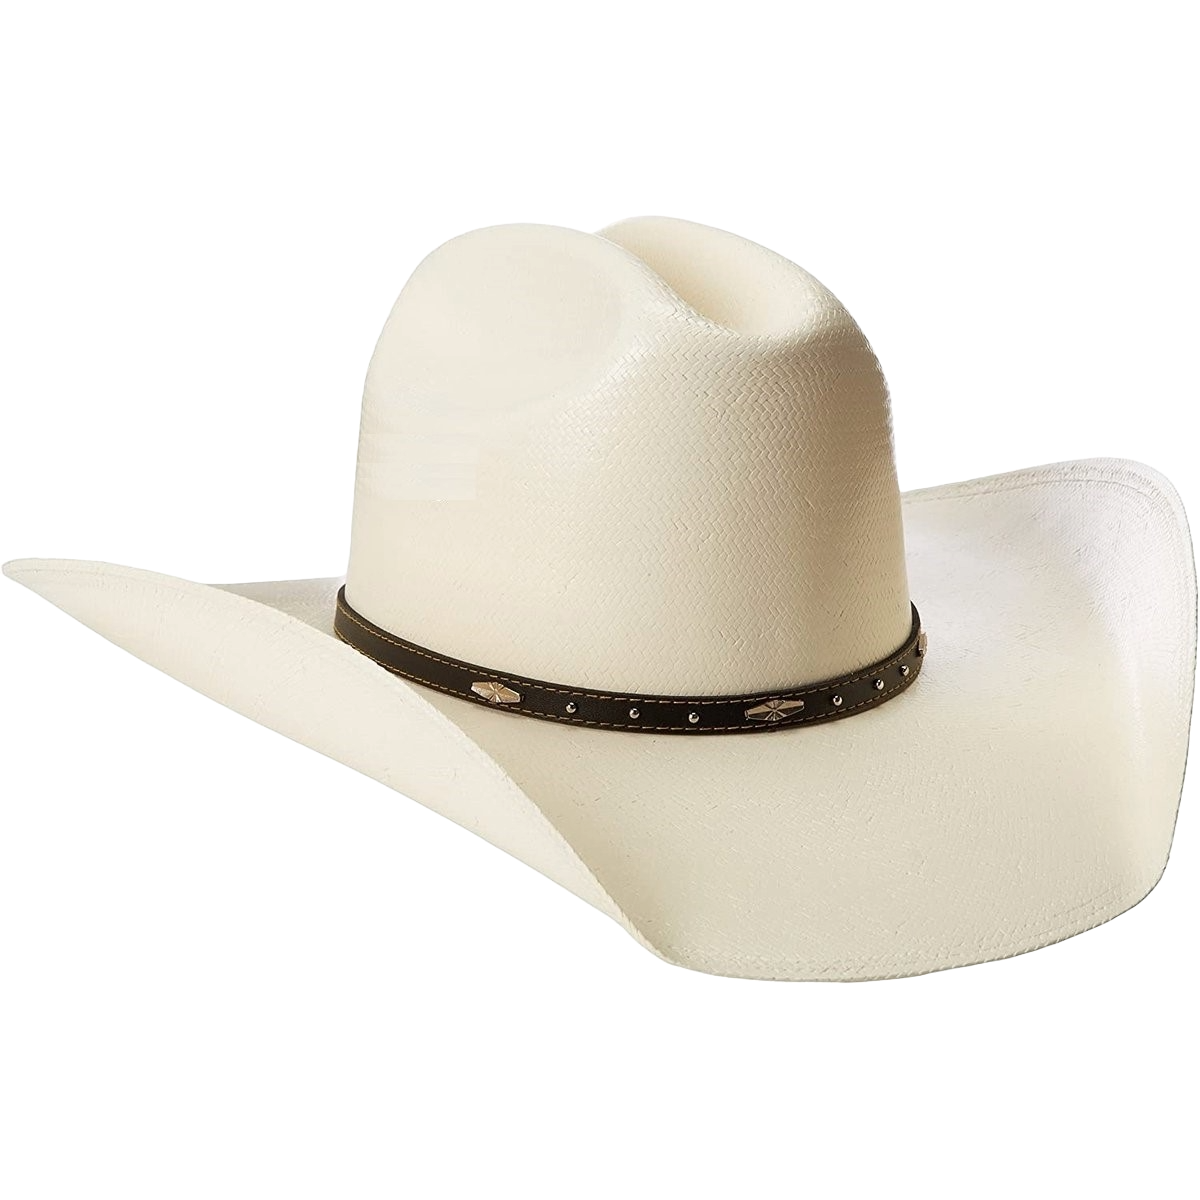 Justin Children's Black Hills Natural Straw Cowboy Hat JS1156BKHJ